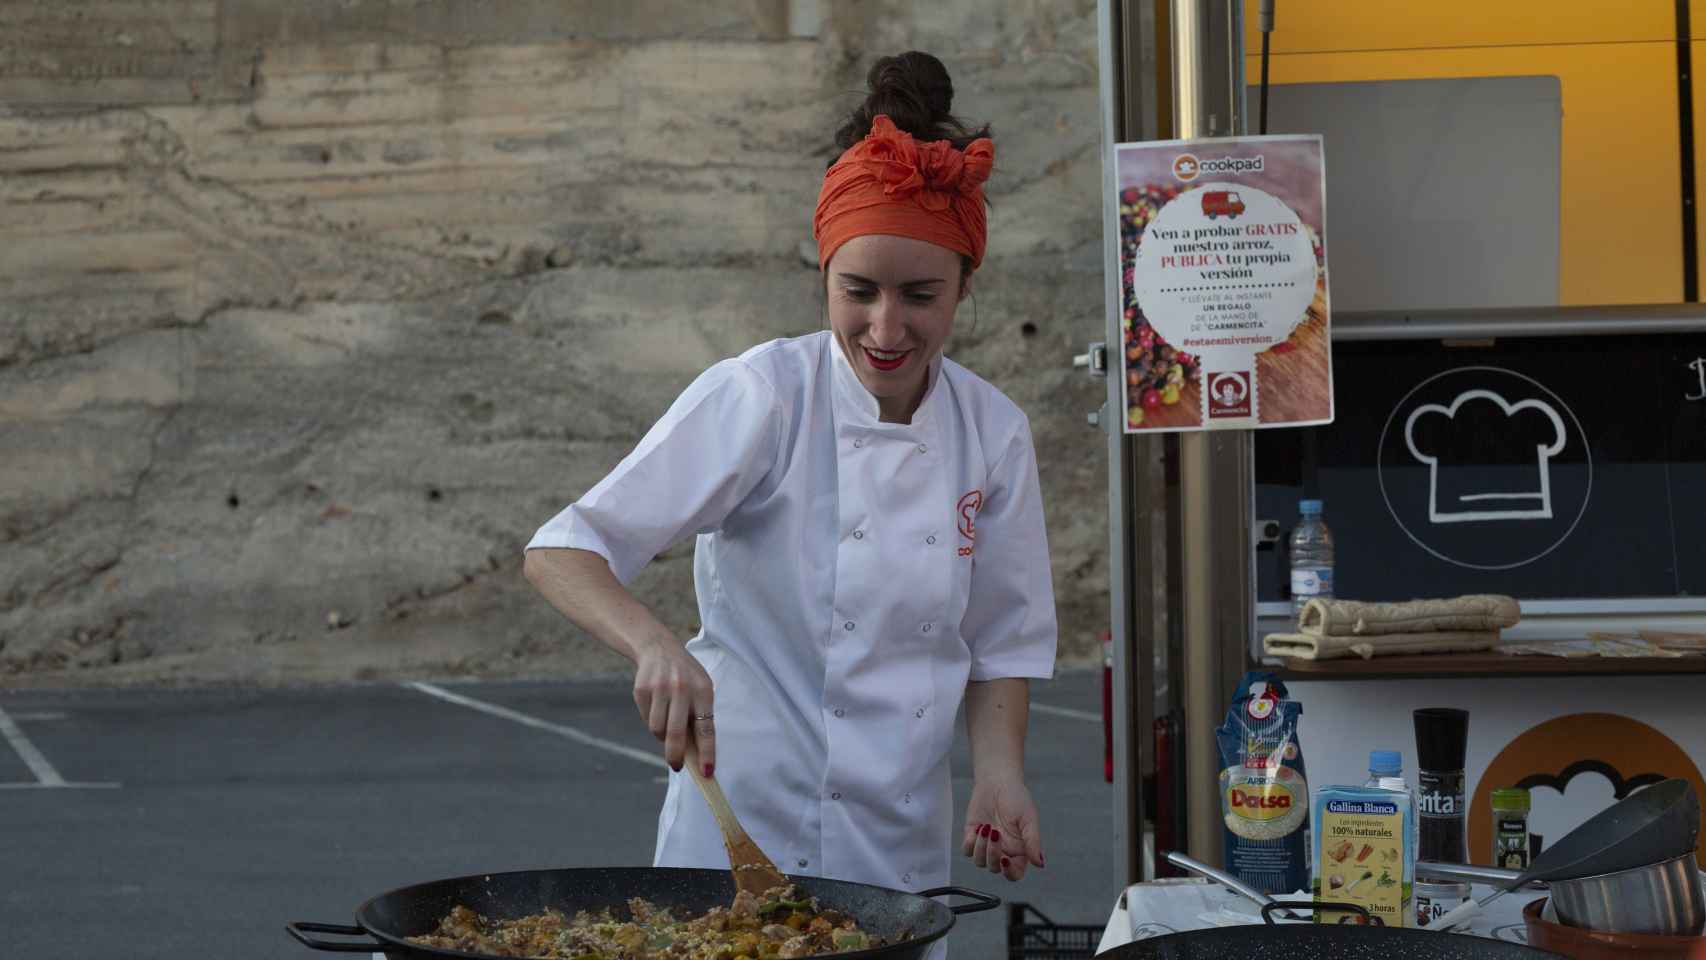 Uno de los eventos por toda España de Cookpad son las foodtrucks.